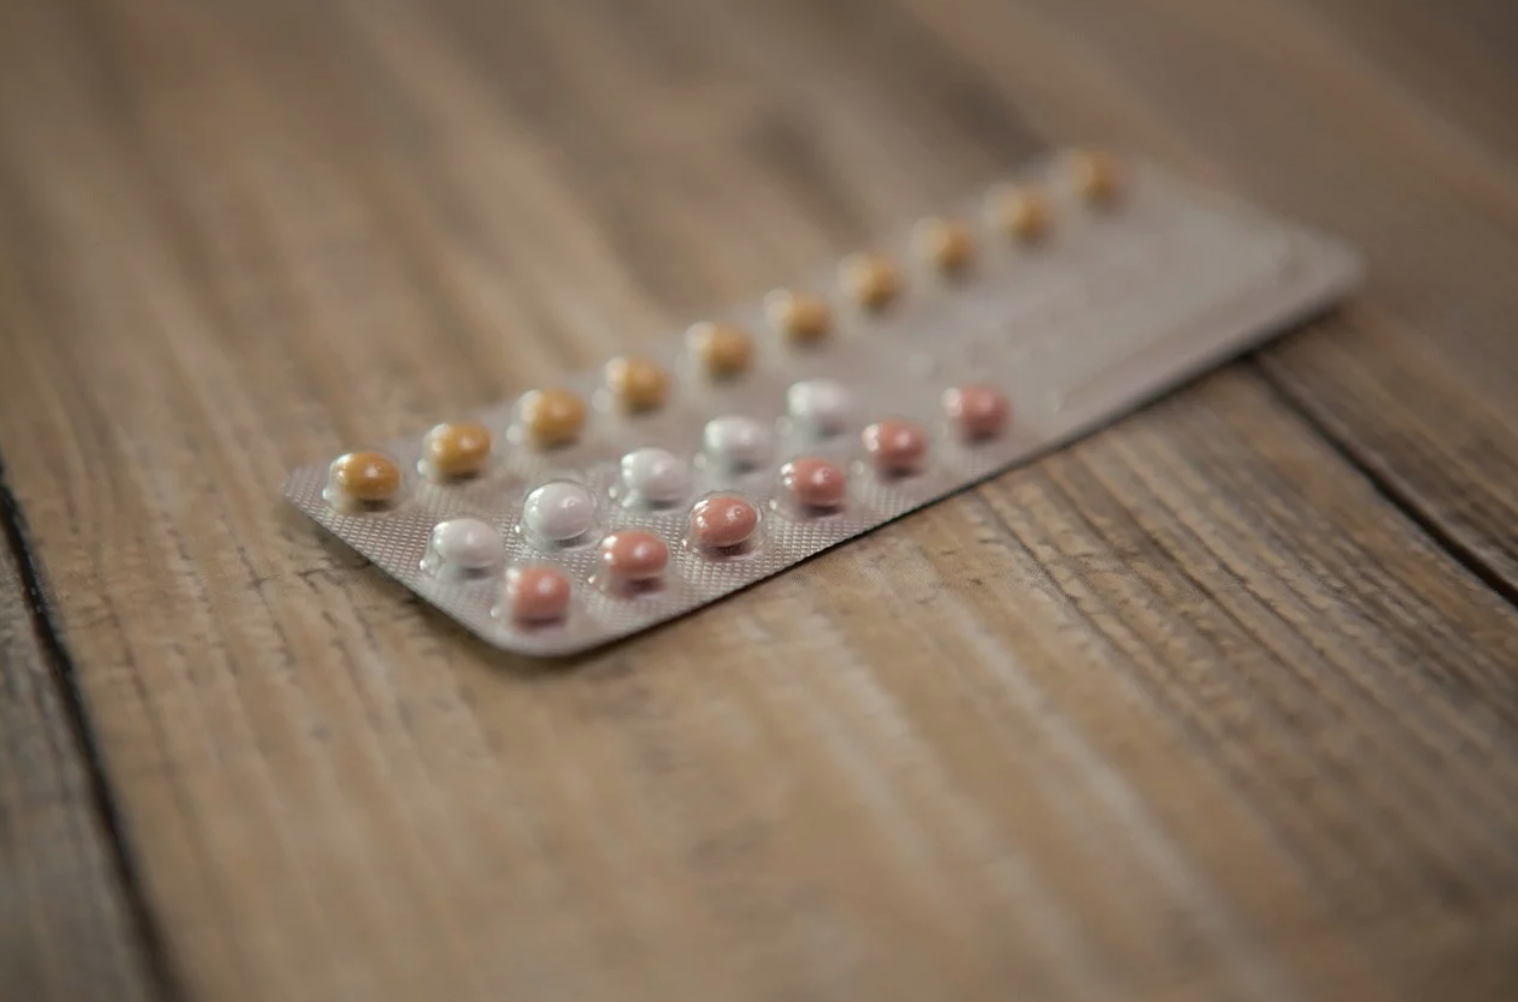 Le fake news sulla pillola abortiva. Non è “sicura” come dicono 1